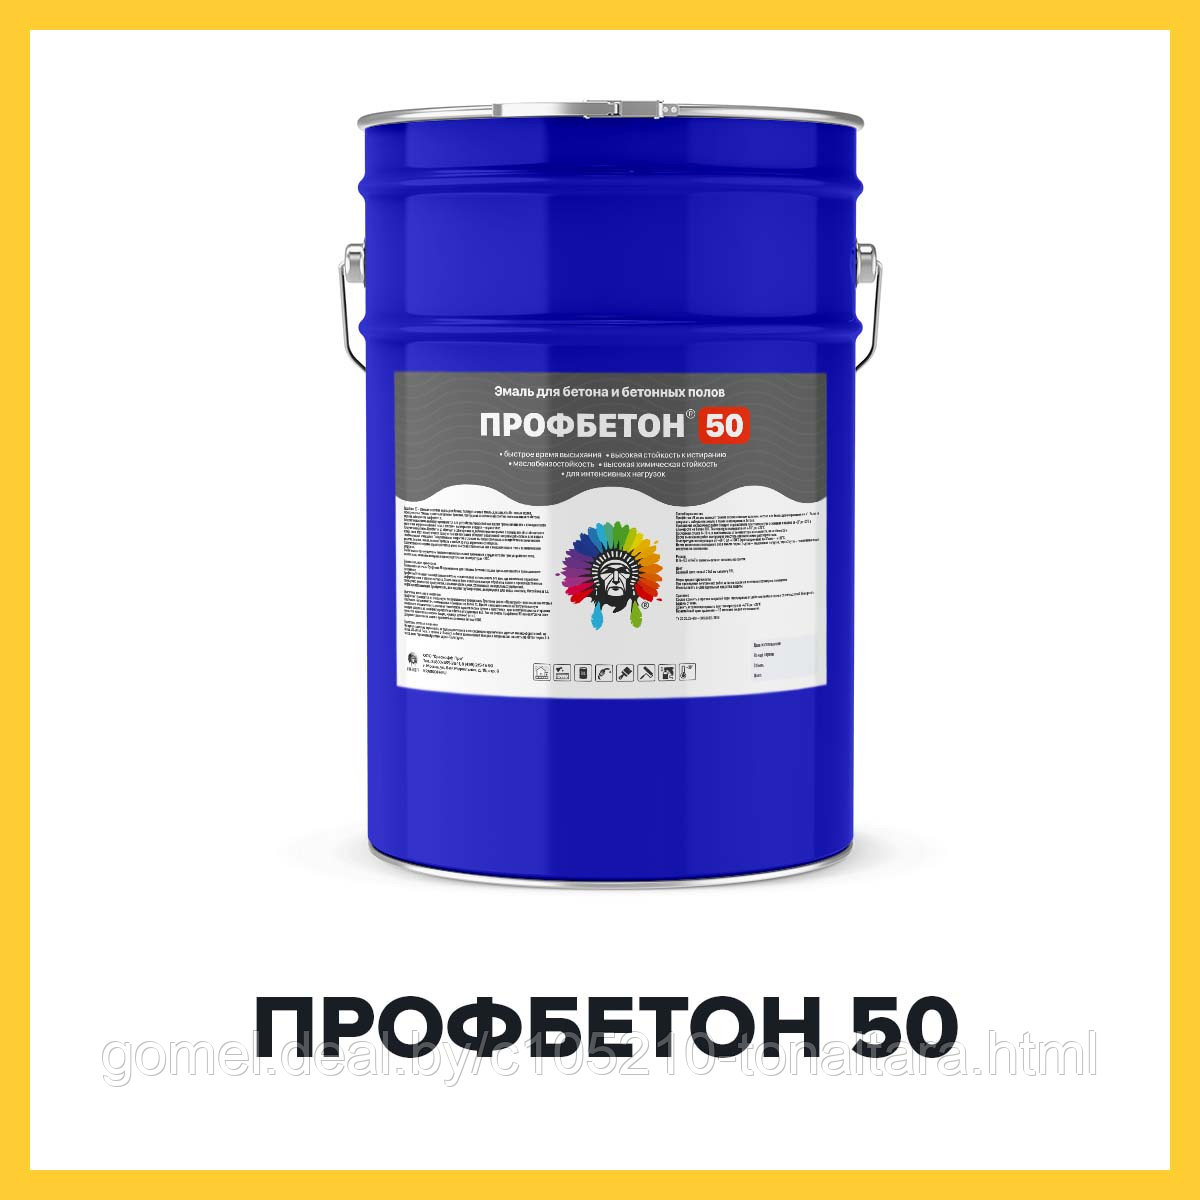 ПРОФБЕТОН 50 (Краскофф Про) – негорючая (Г1, РП1, Д2, В2, Т2) огнестойкая искробезопасная полиуретановая эмаль